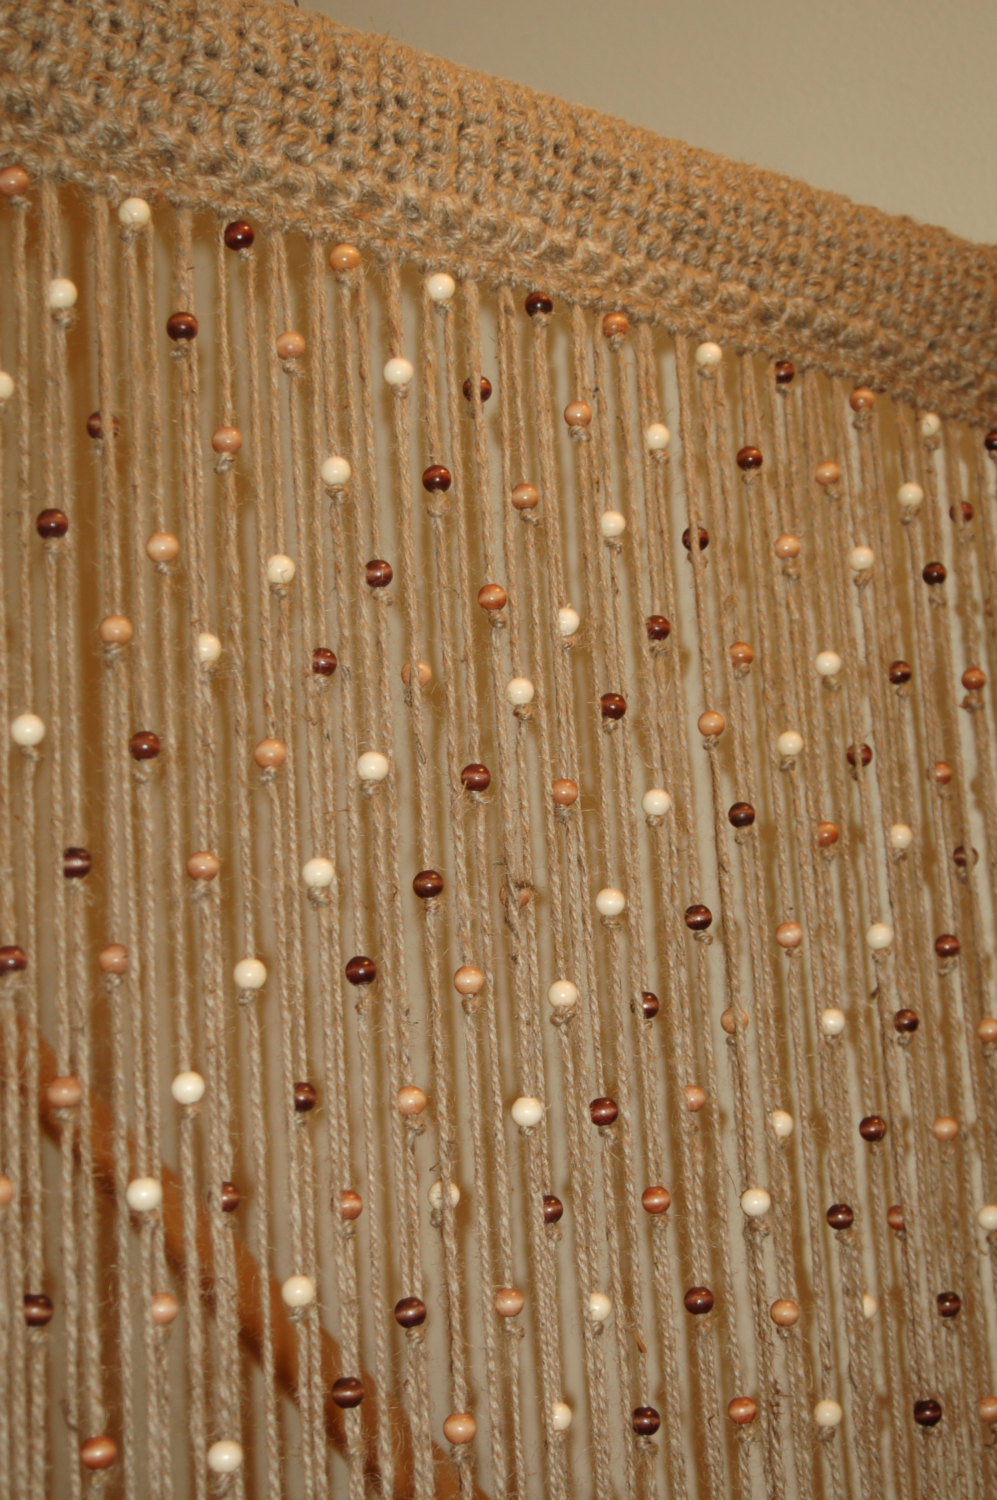 Crochet Door Curtain Pattern Natural Jute Crochet Curtain Door Window With Wooden Beads Etsy